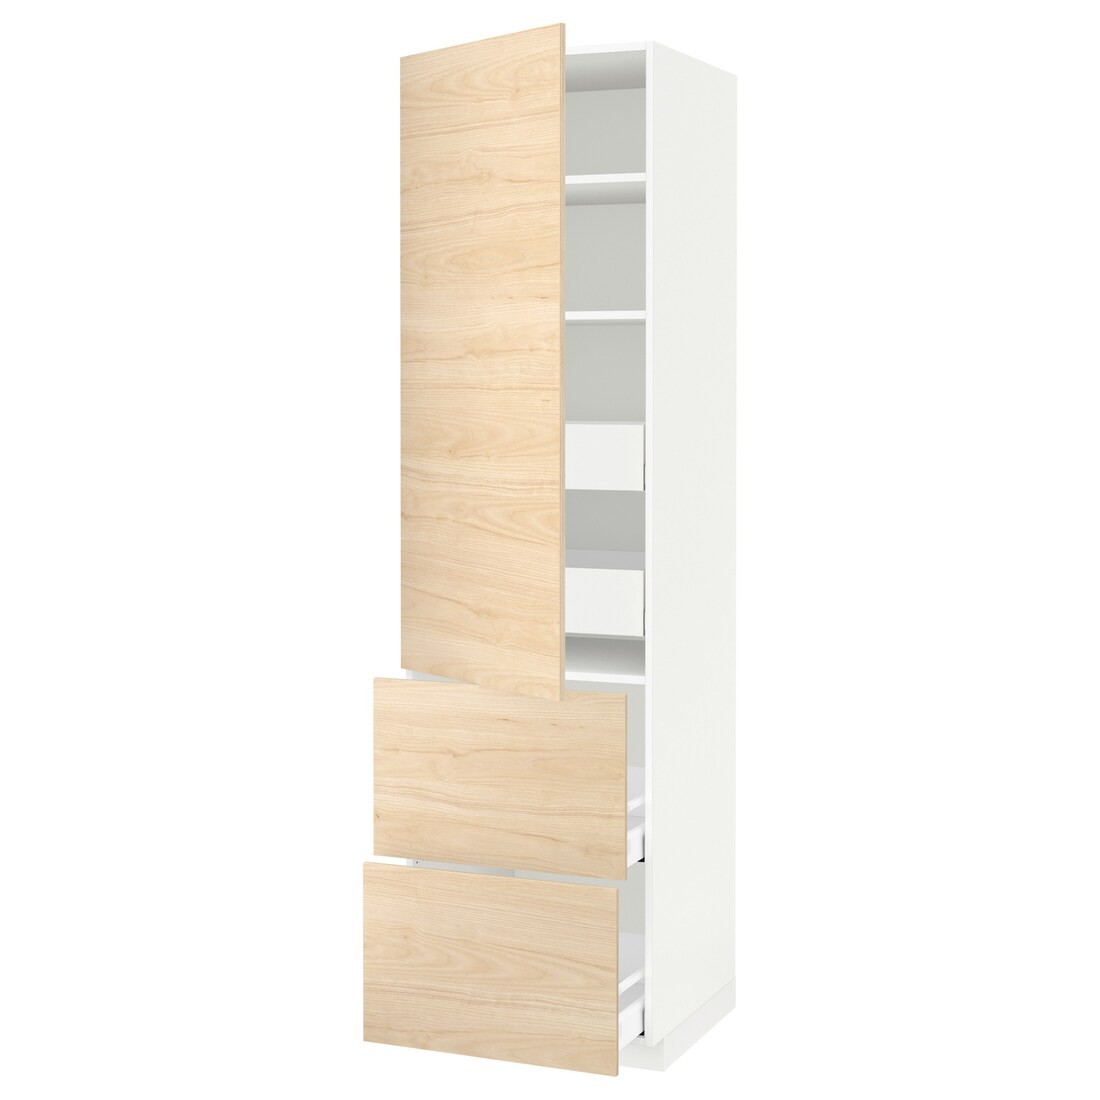 IKEA METOD МЕТОД / MAXIMERA МАКСИМЕРА Высокий шкаф с полками / ящиками, белый / Askersund узор светлый ясень, 60x60x220 см 19381801 193.818.01